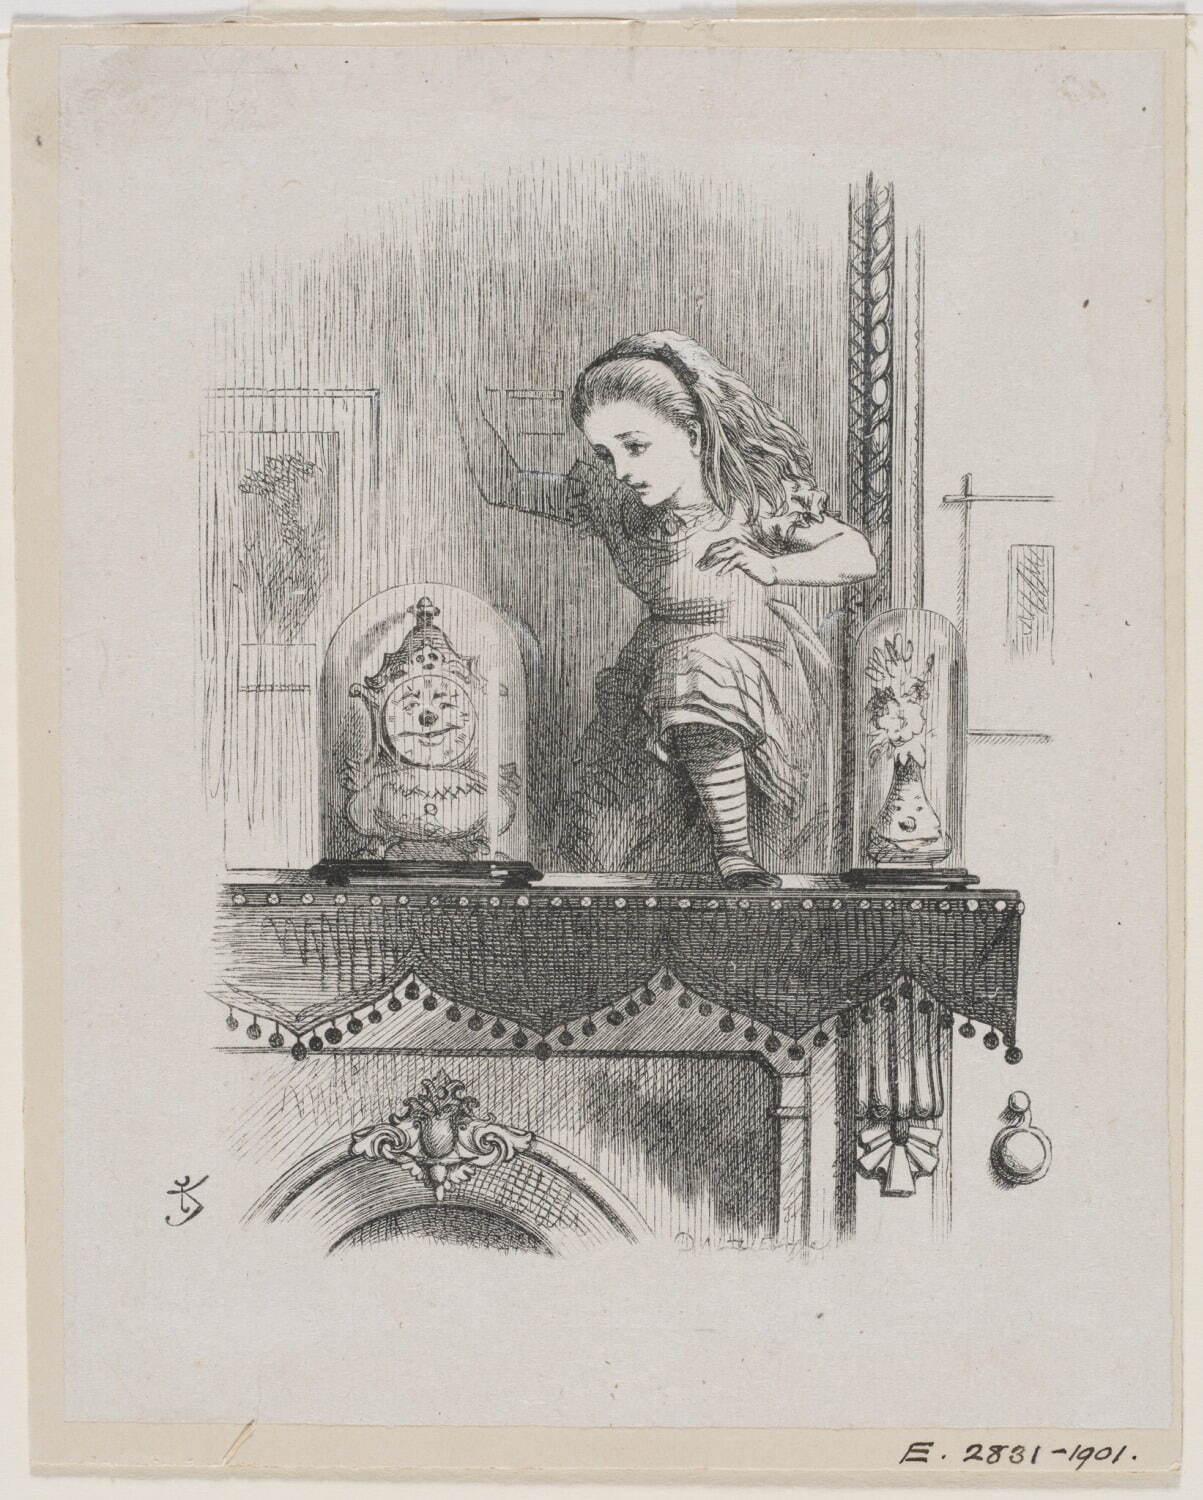 『鏡の国のアリス』より ジョン・テニエル画 ダルジール兄弟彫版 1871年
© Victoria and Albert Museum, London